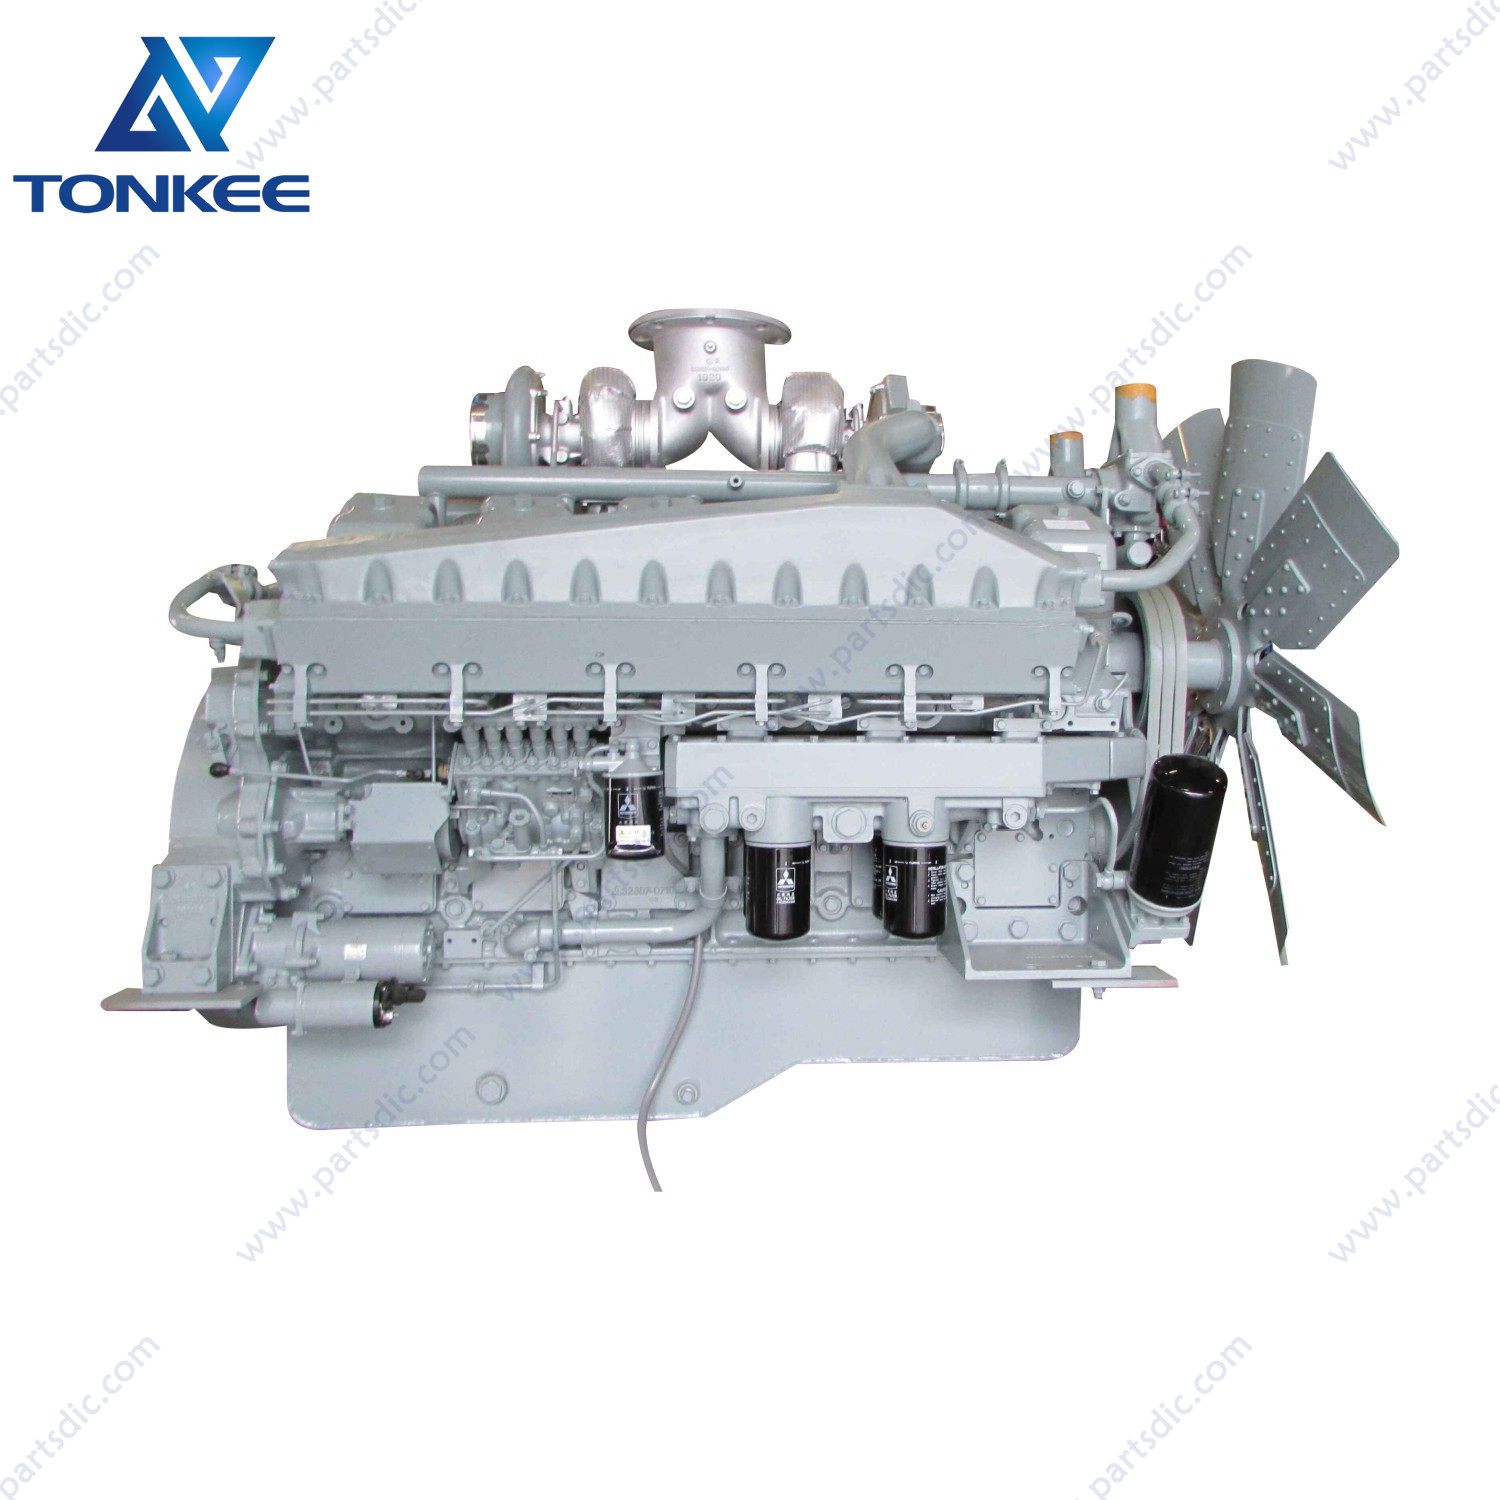 NEW 9237308 S12A2 S12A2-Y1TAA1 S12A2-PTA diesel engine assy Shovel excavator EX1900 EX1900-5 complete diesel engine assy suitable for HITACHI 